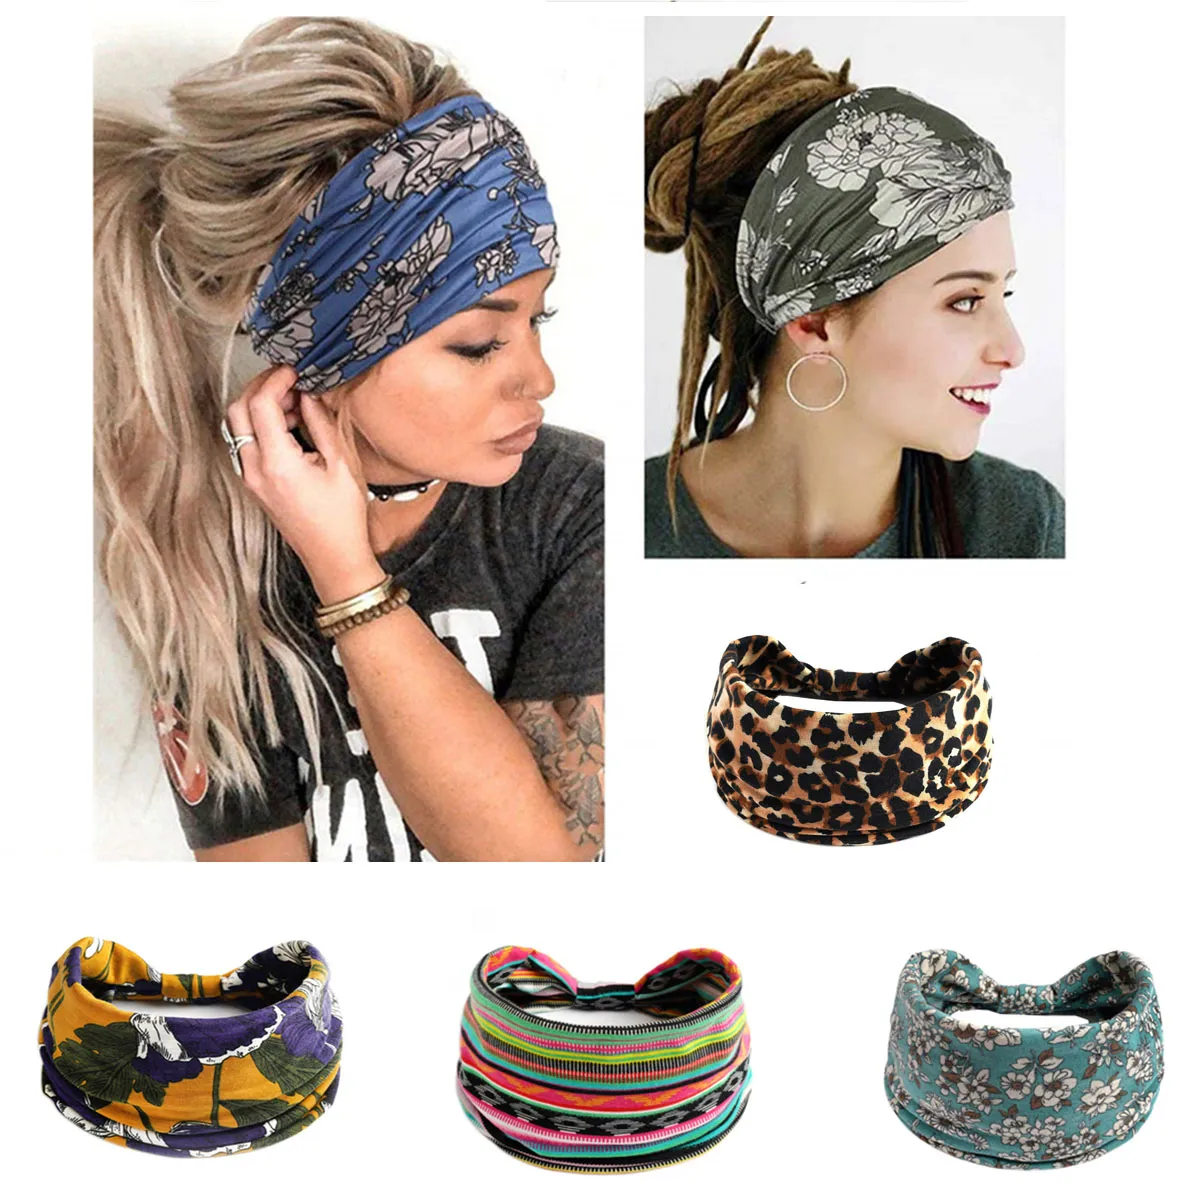 Bandeaux de tête larges pour femmes Boho Noted Elastic Hair Bands Girls Hair Accessories Yoga Running Travel Imprimé Turban Bandage